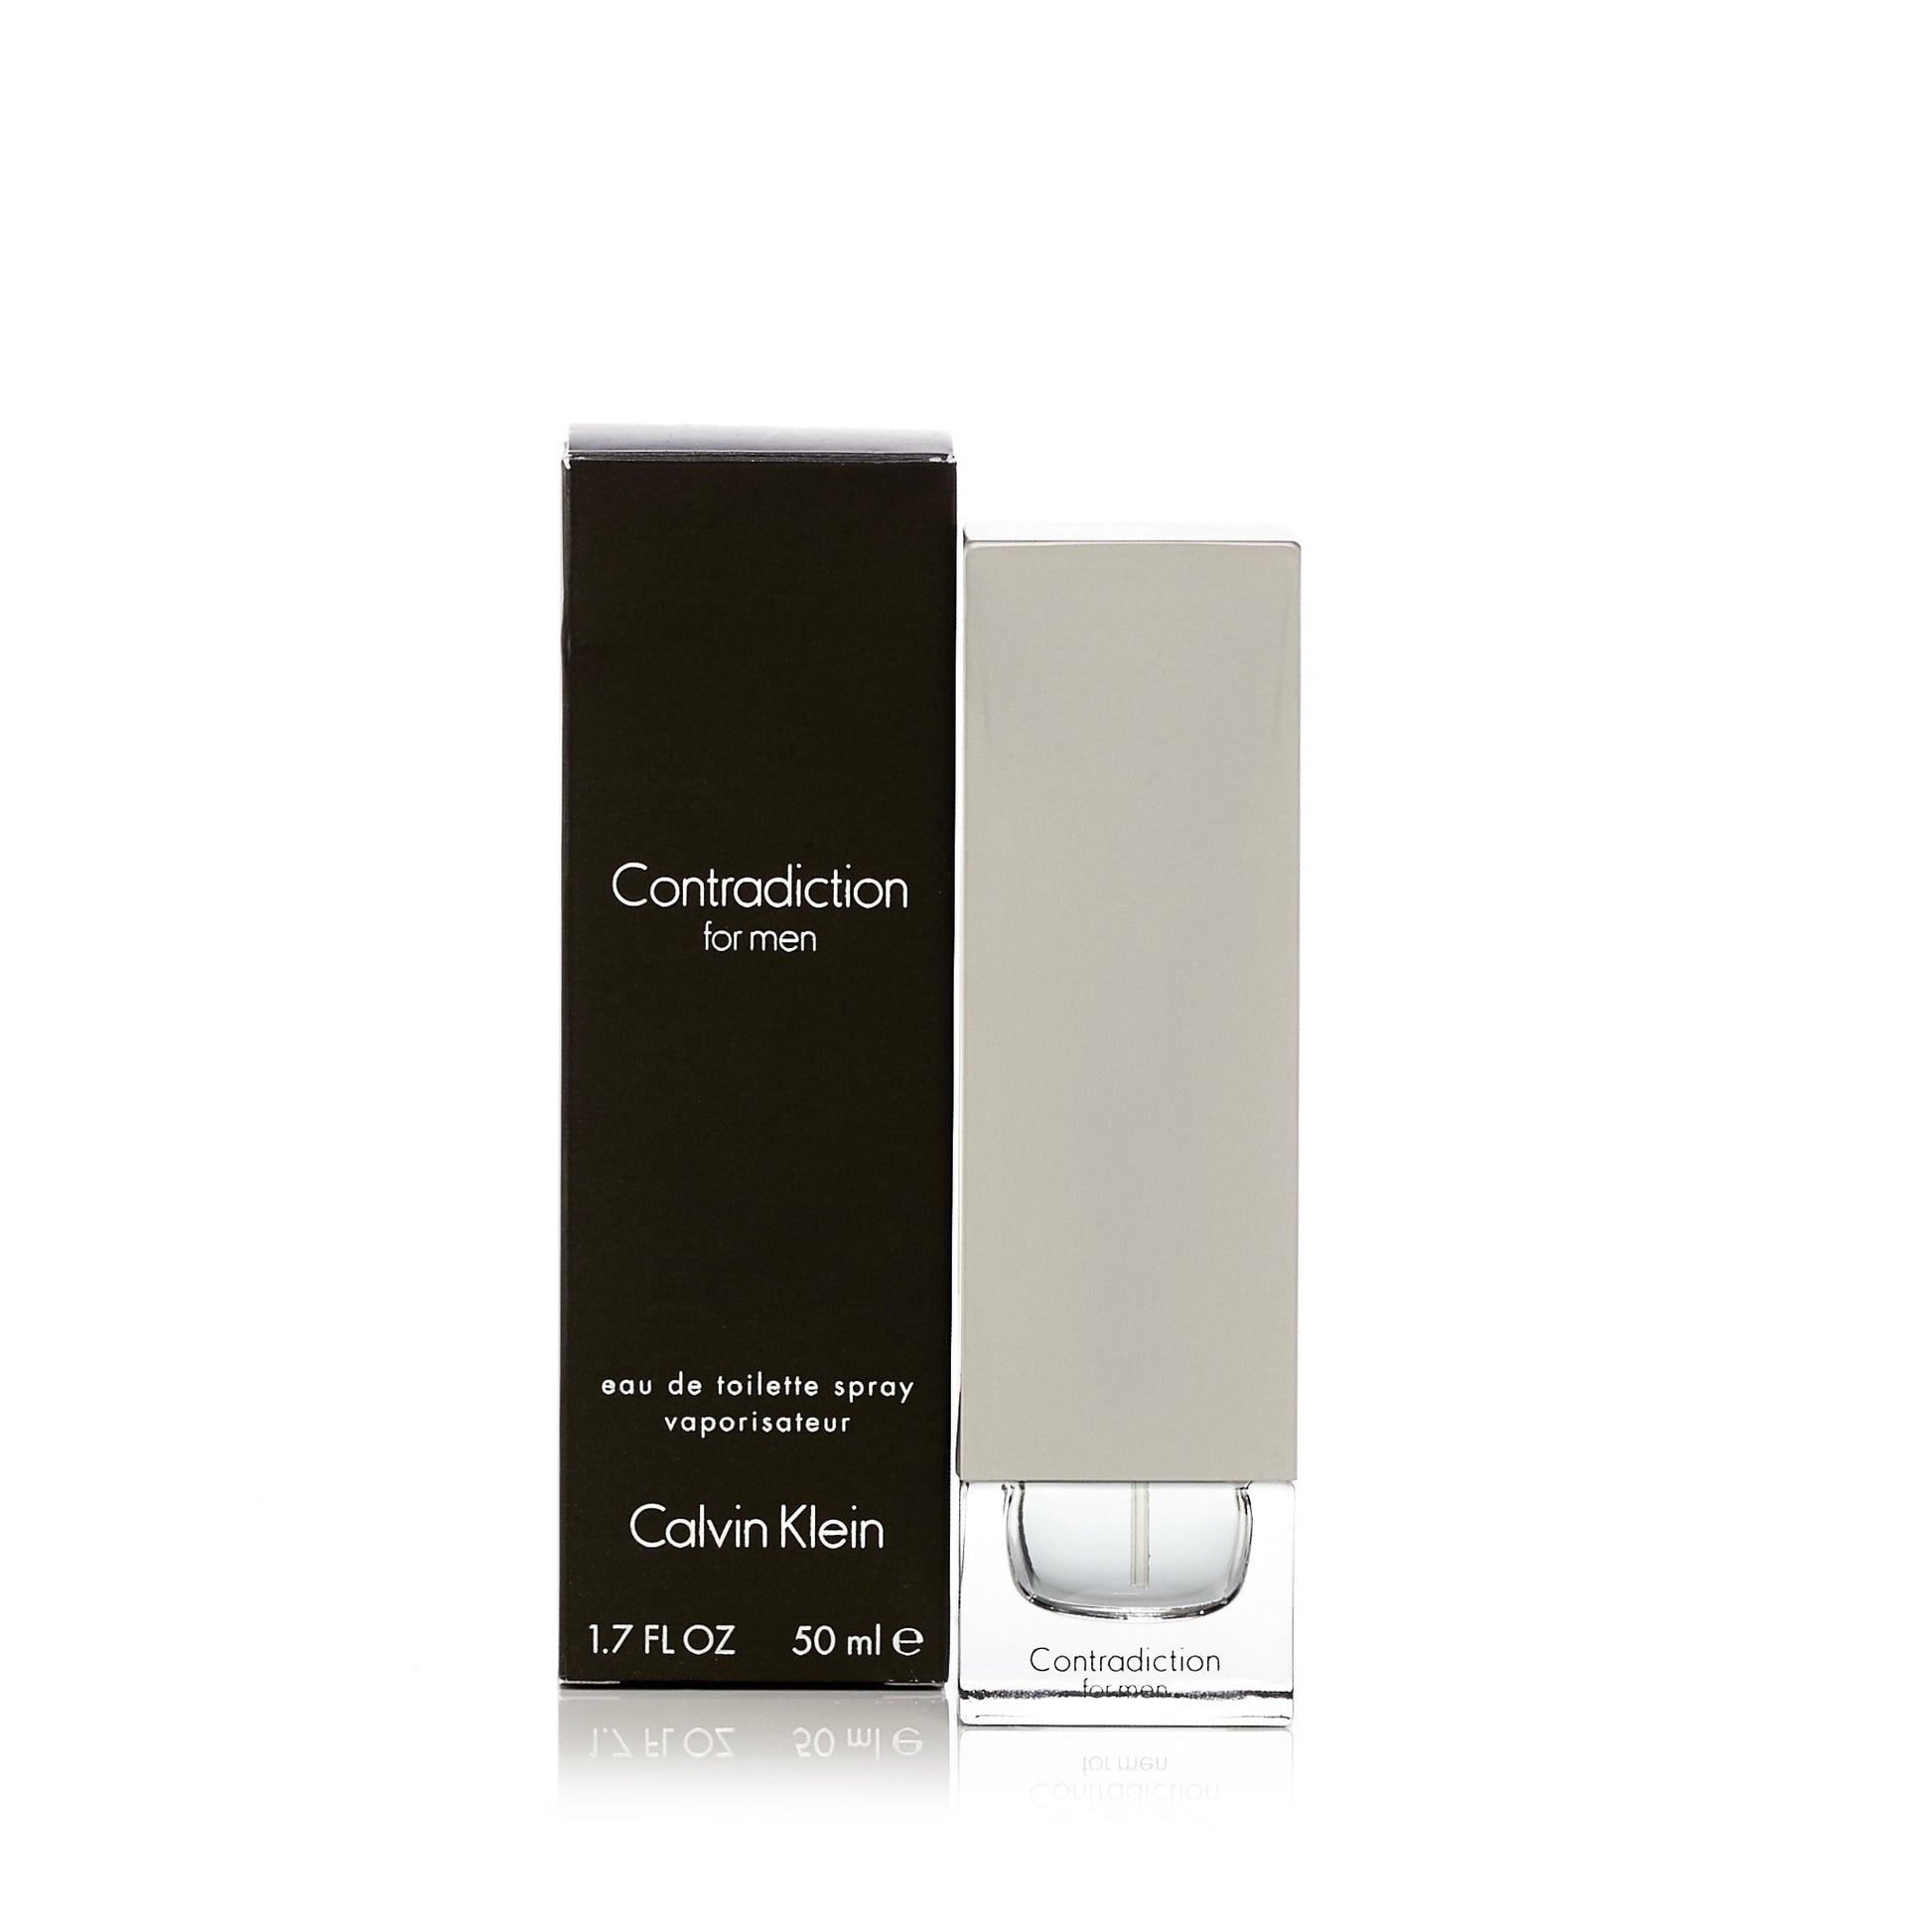 Contradiction Eau de Toilette Spray for Men by Calvin Klein 1.7 oz. Click to open in modal